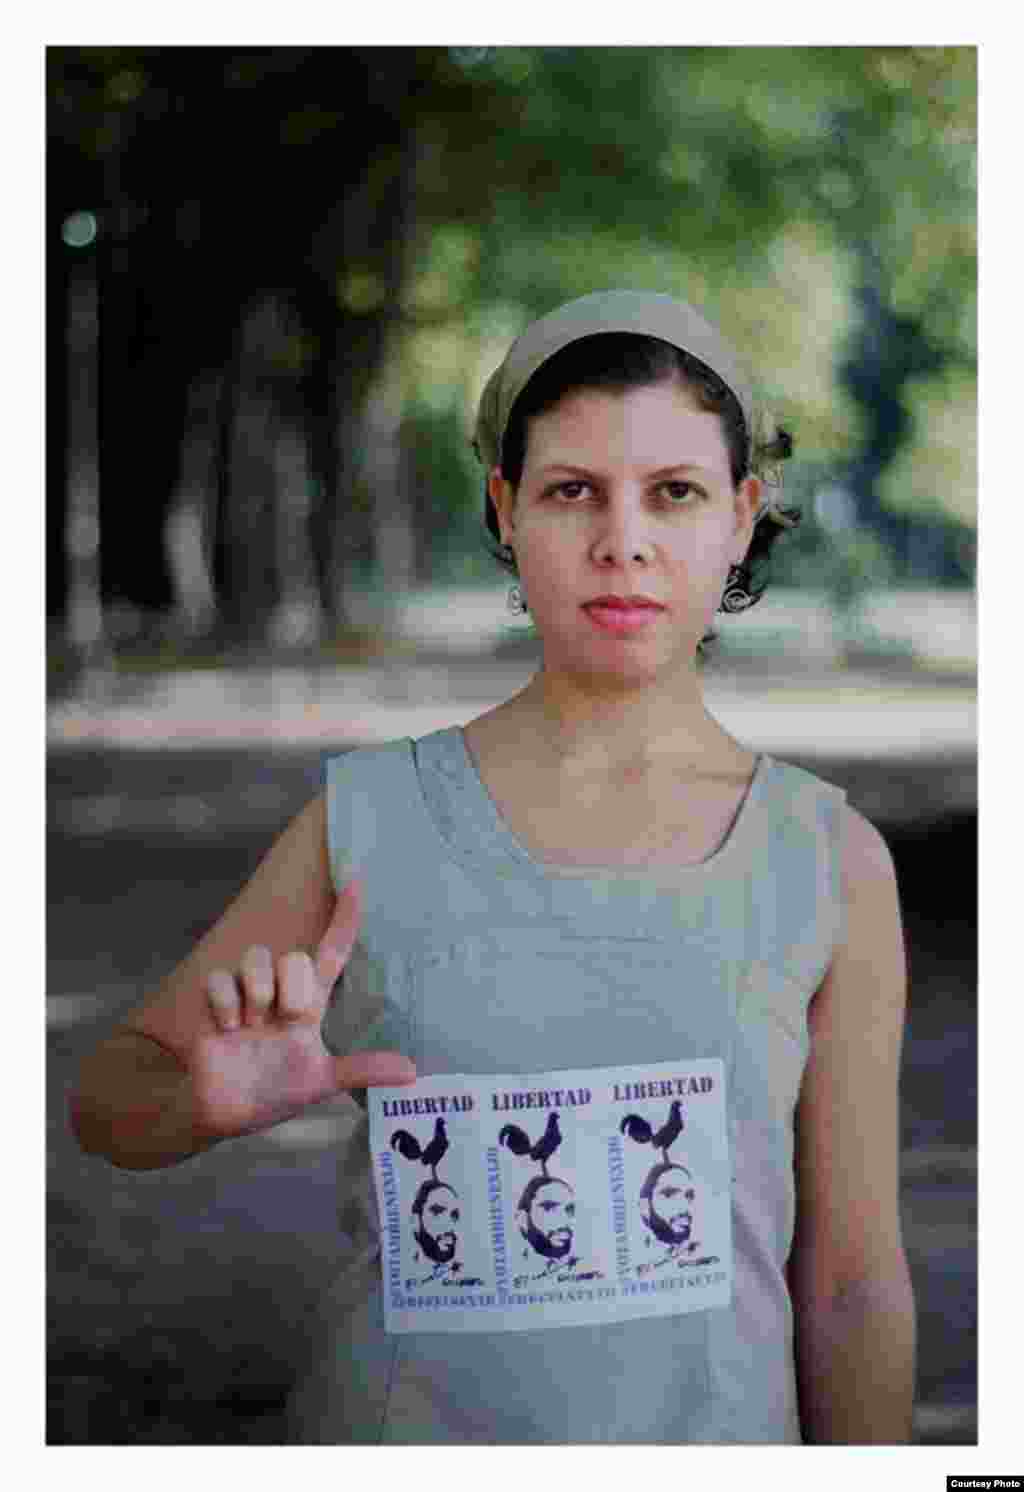 La bloguera cubana Lía Villares, músico, fotógrafa y una de las principales activistas en la campaña por la liberación del grafitero Danilo Maldonado, El Sexto. Foto cortesía de Claudio Fuentes.